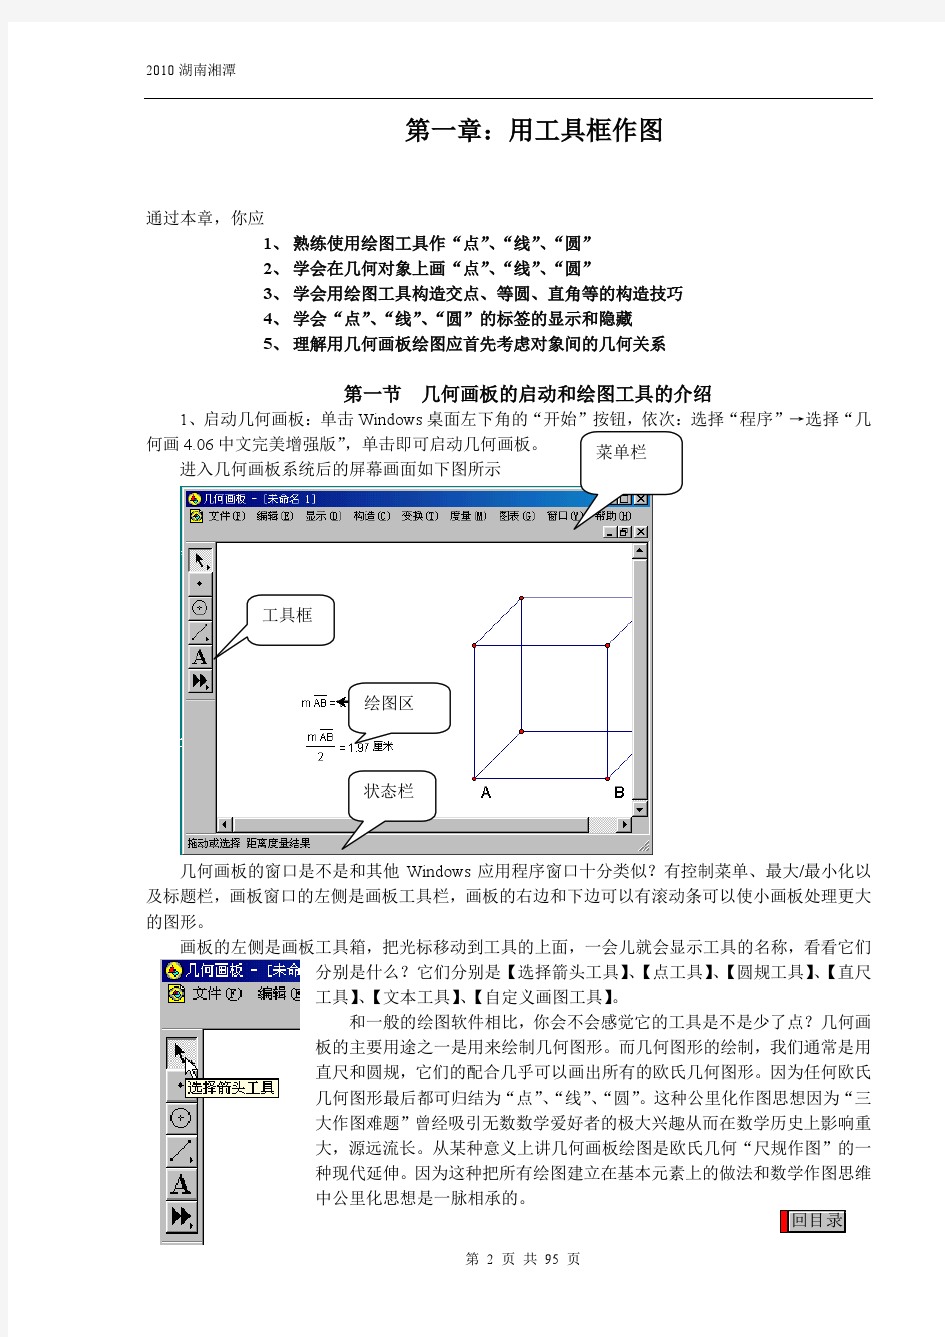 几何画板5.01最强中文版+培训教程